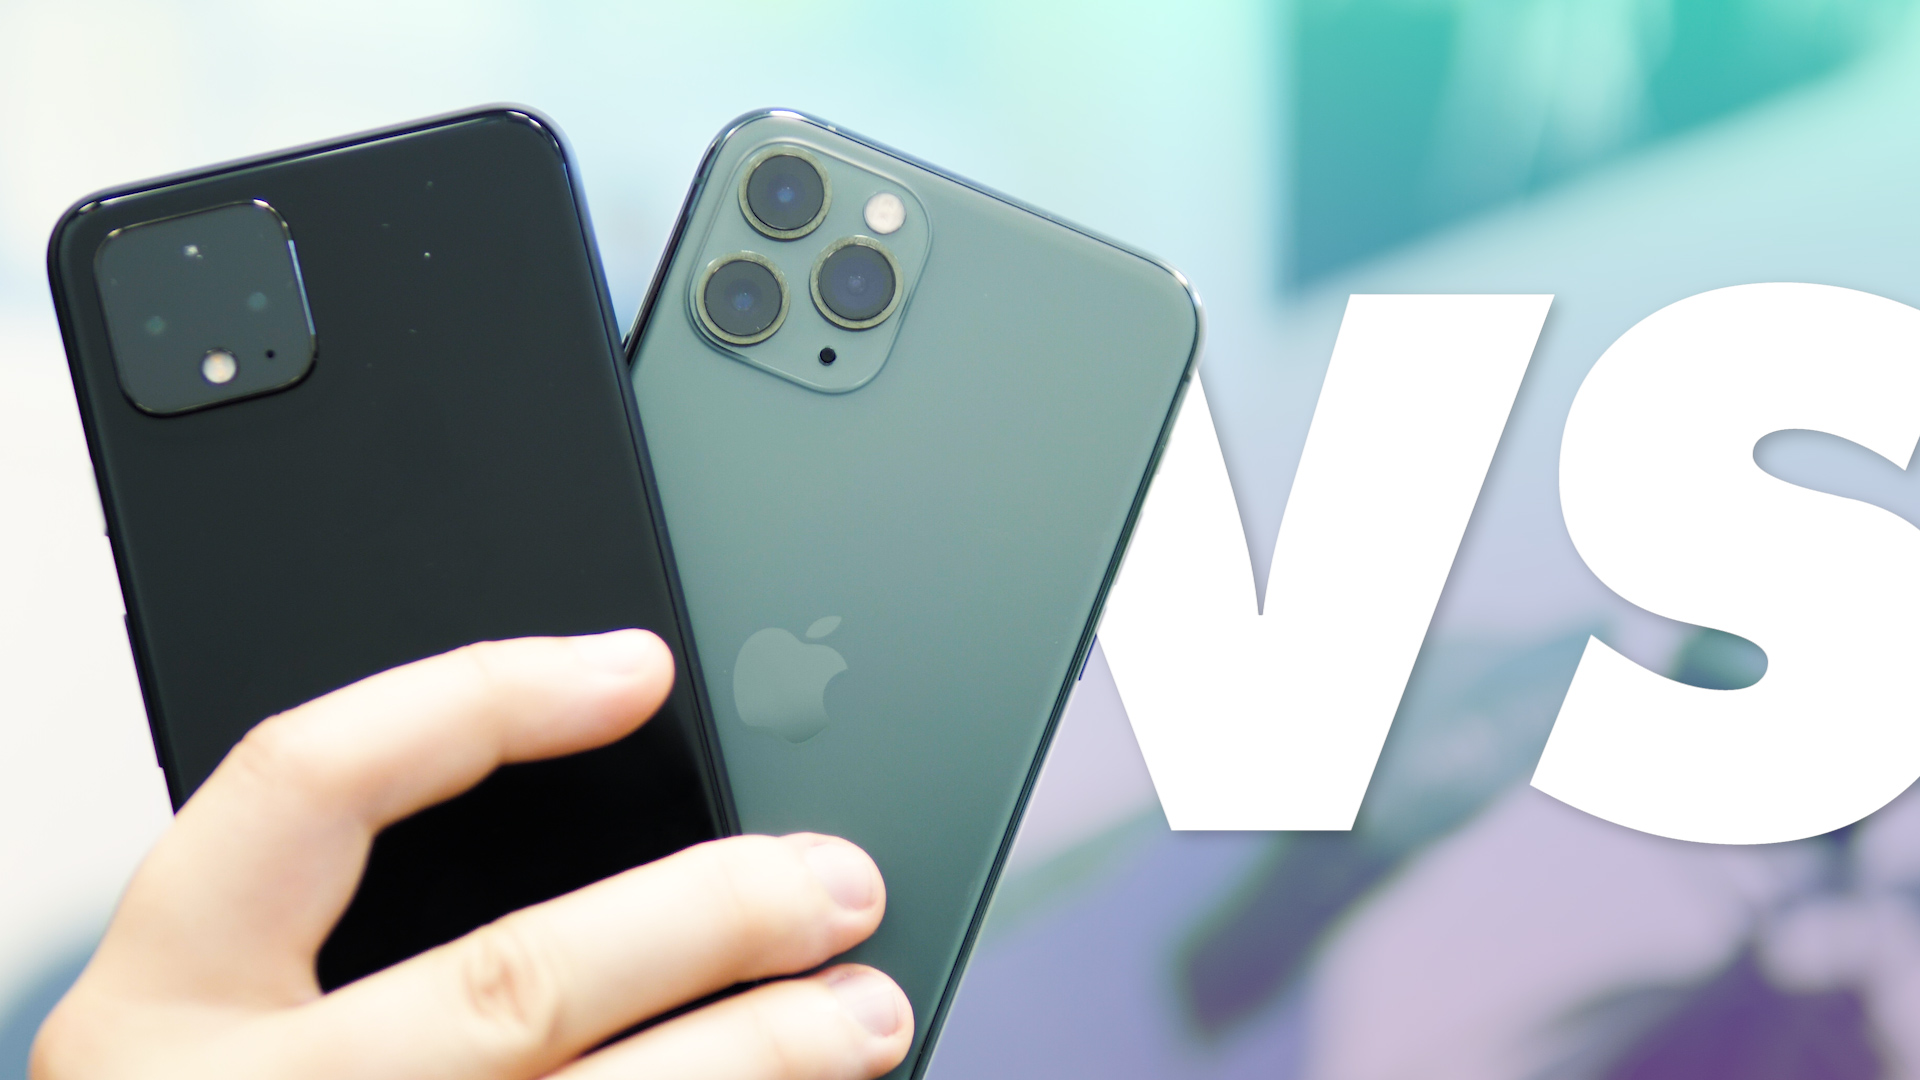 Pixel 4 vs iPhone 11 Pro : QUI EST LE PLUS FORT ? (COMPARATIF)